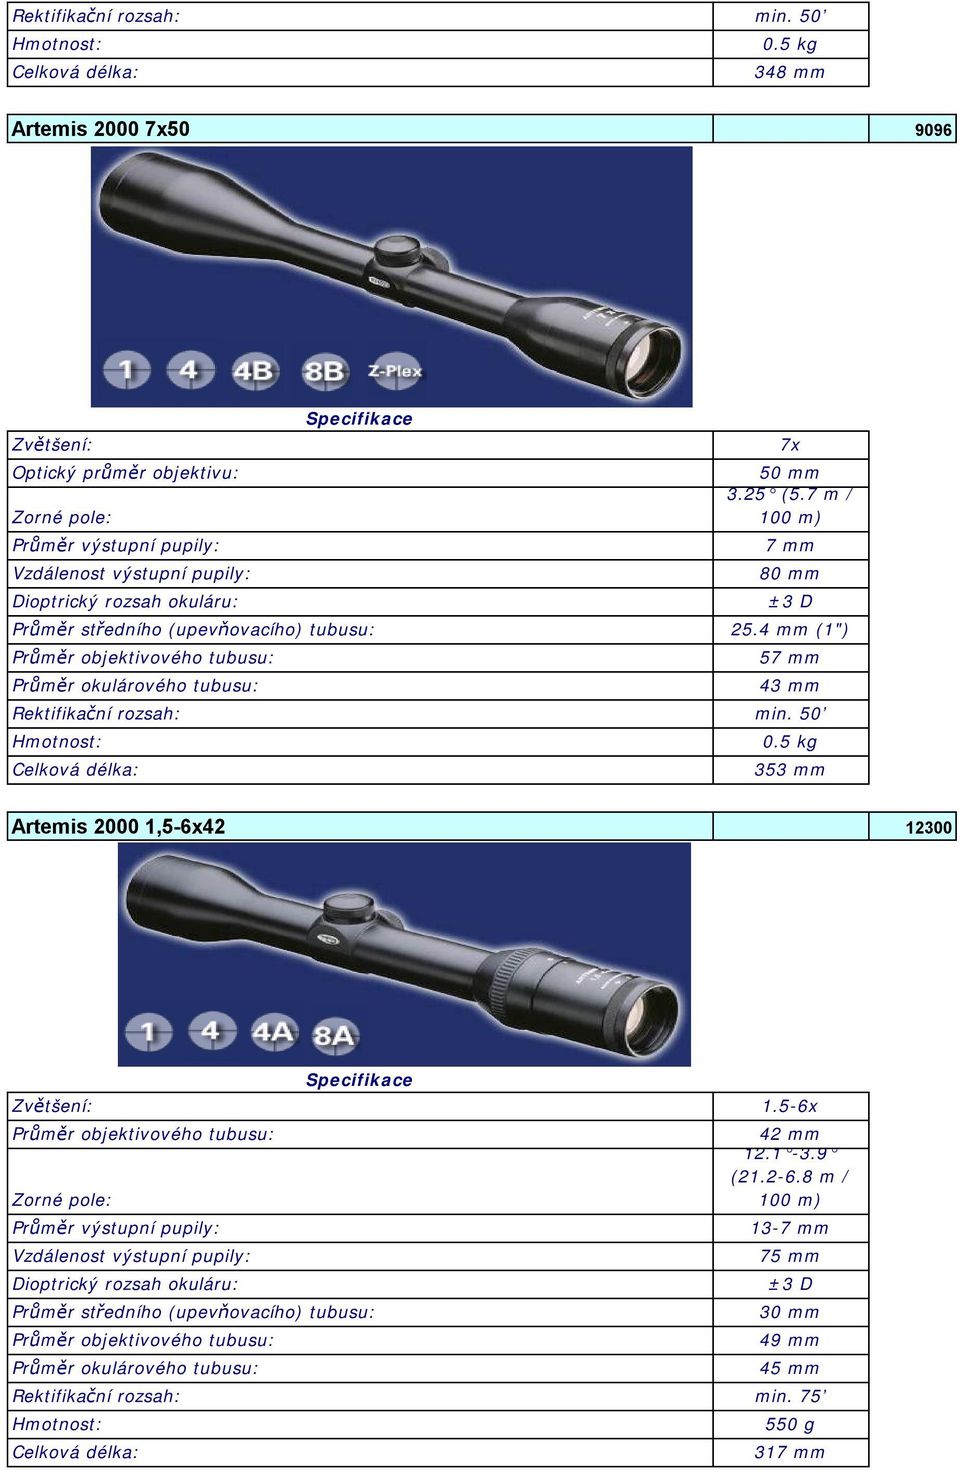 4 mm (1") Průměr objektivového tubusu: Průměr okulárového tubusu: 57 mm 43 mm Rektifikační rozsah: min. 50 Celková délka: 0.